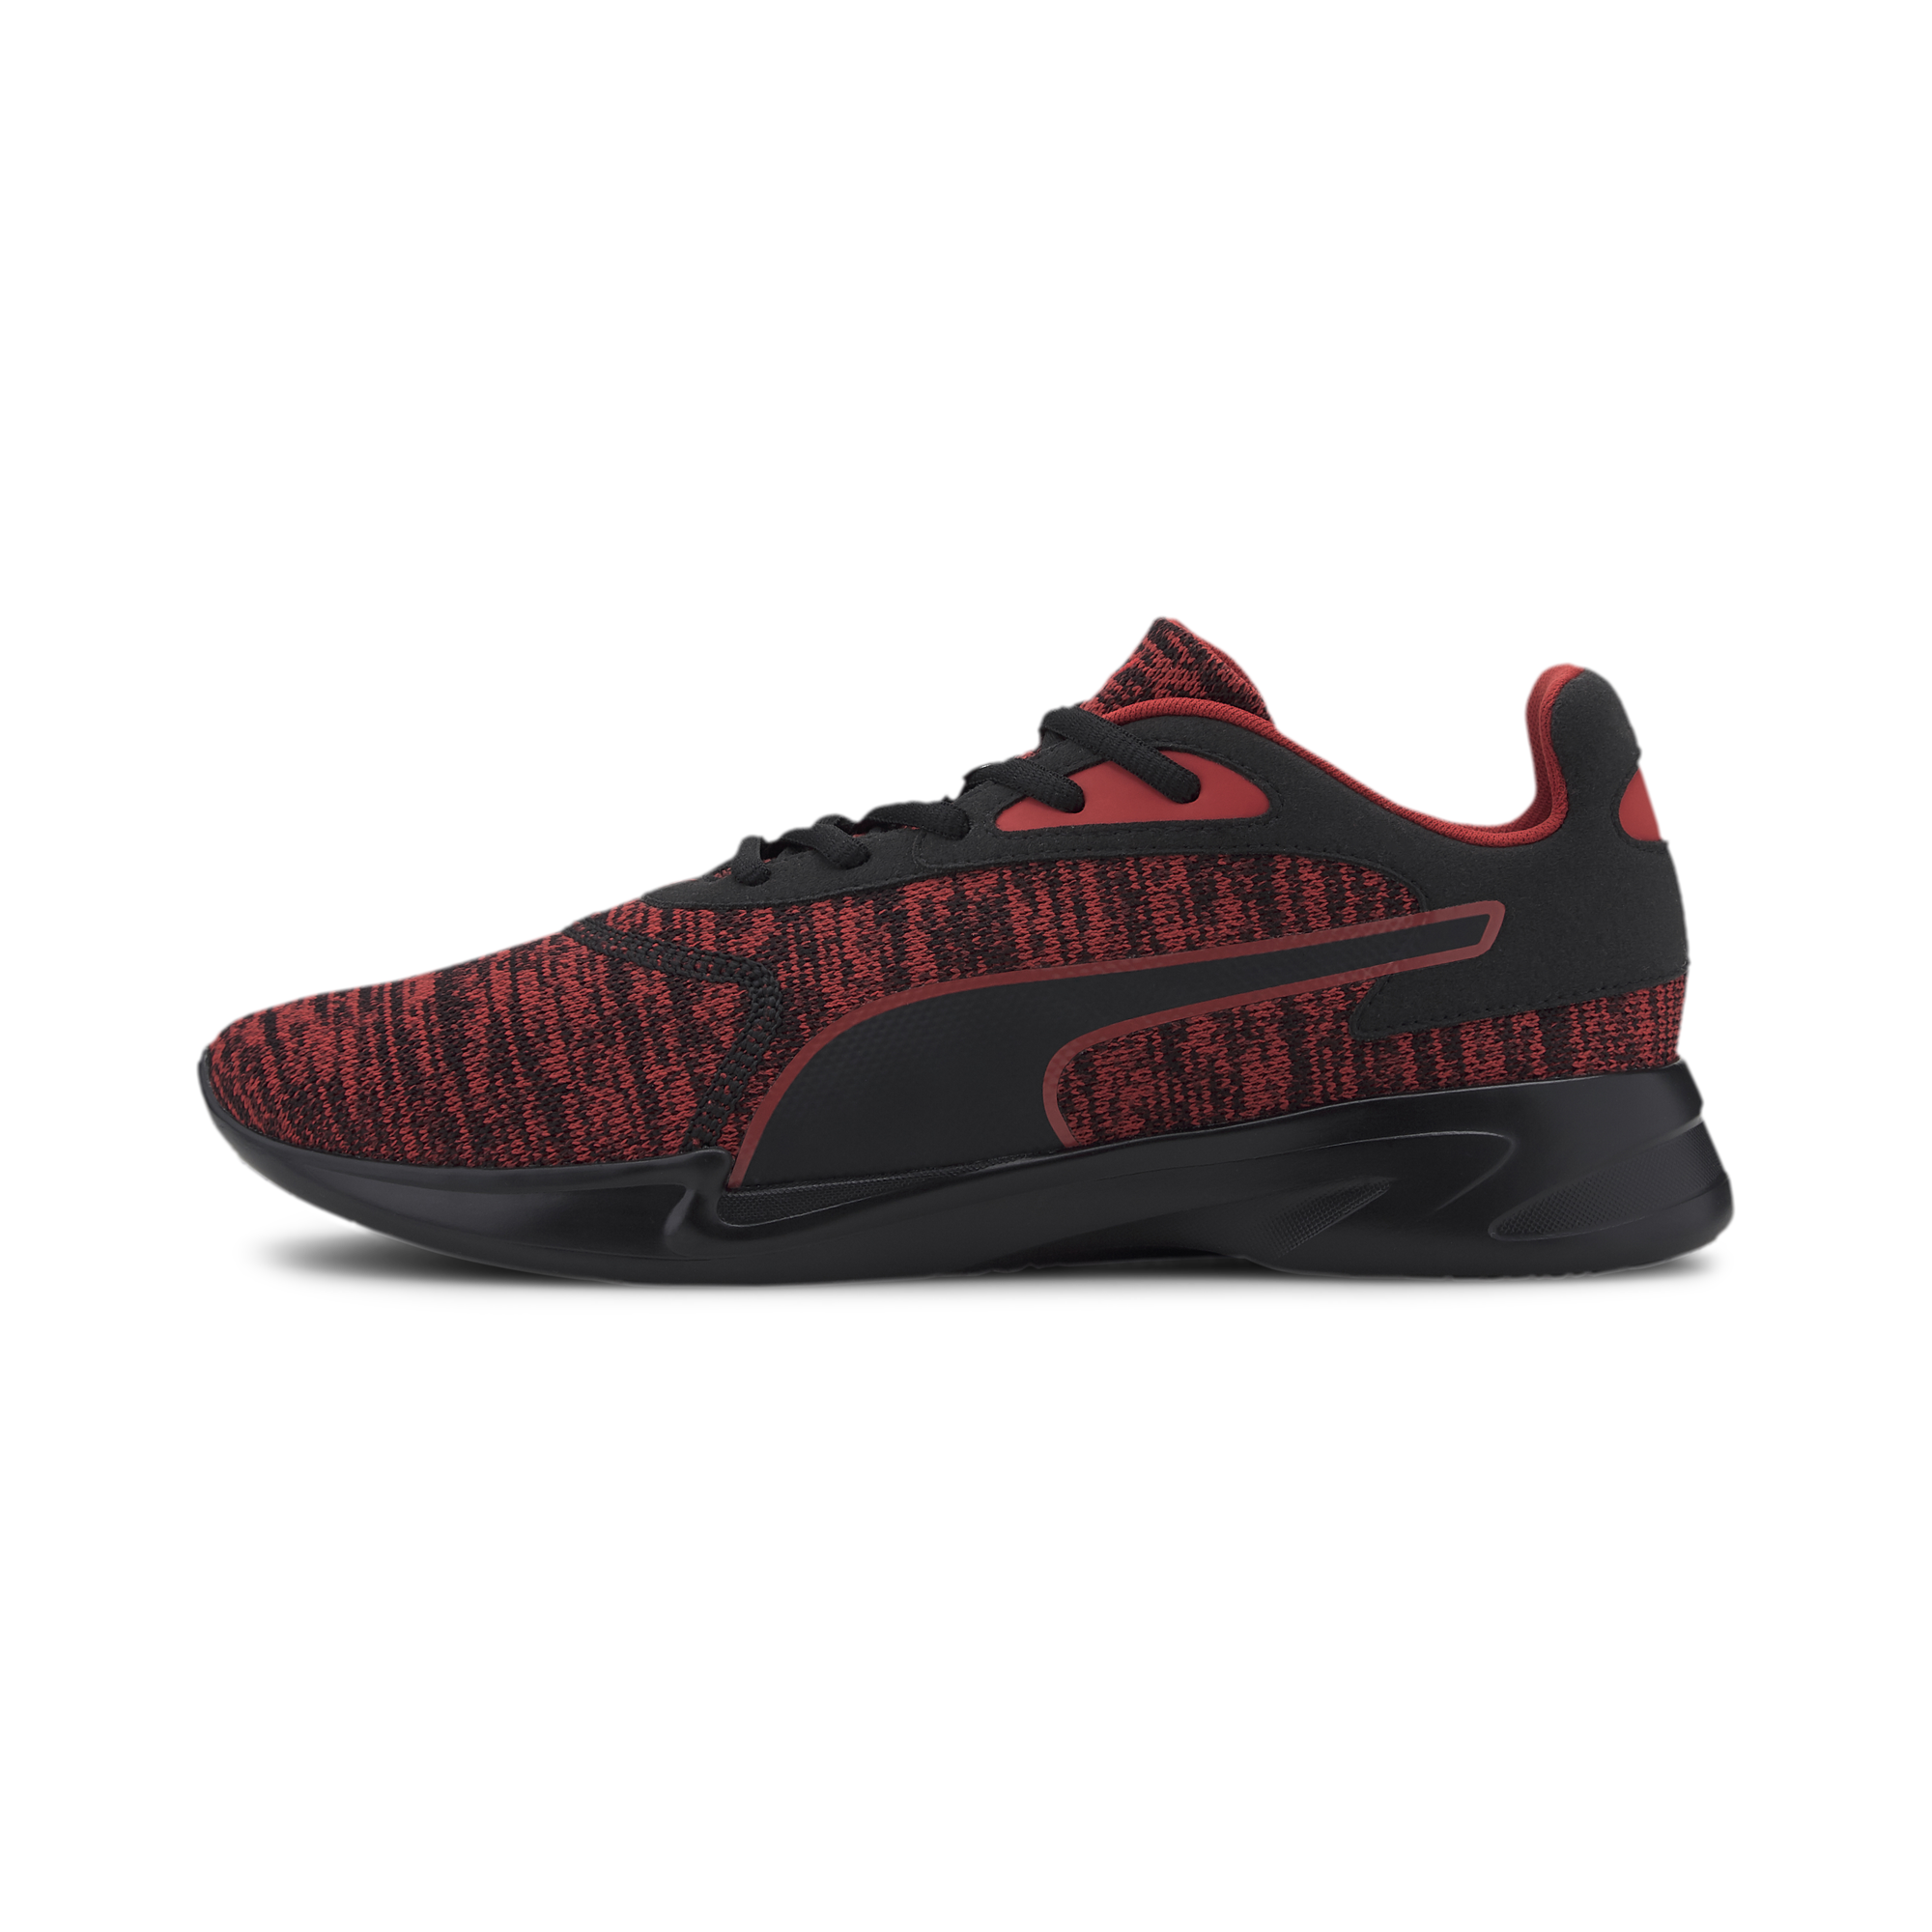 Puma Jaro Knit - Black/Red รองเท้าวิ่ง พูม่า แท้ สี ดำแดง ไซส์ EU 39 สี ดำแดงไซส์ EU 39